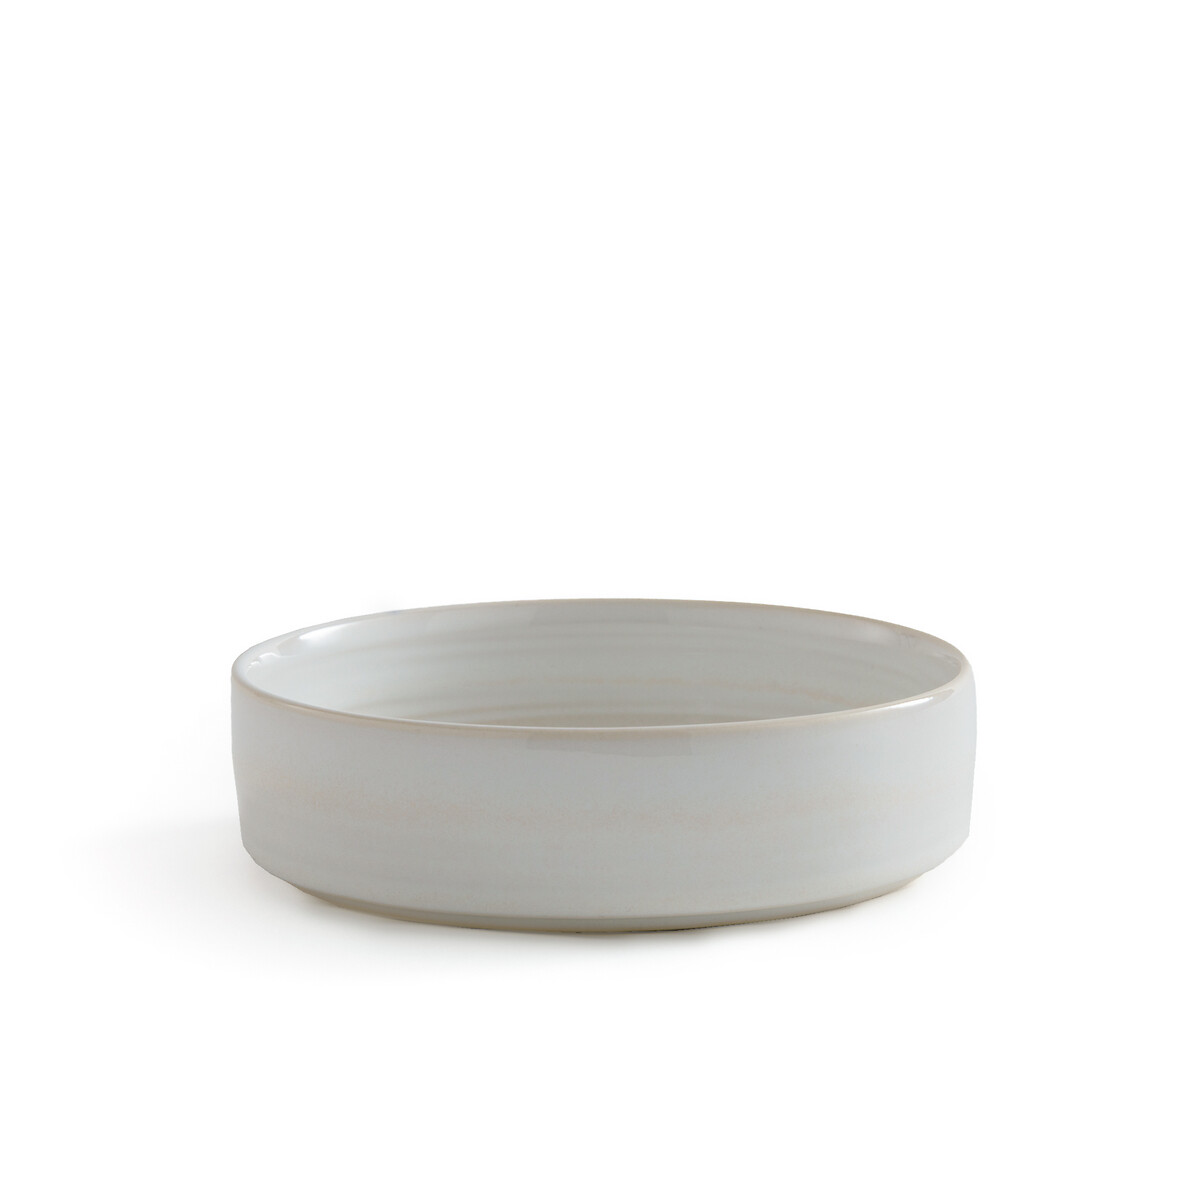 Комплект из 4 глубоких тарелок из керамики Sacha единый размер белый комплект из 4 глубоких тарелок из керамики mytili единый размер белый